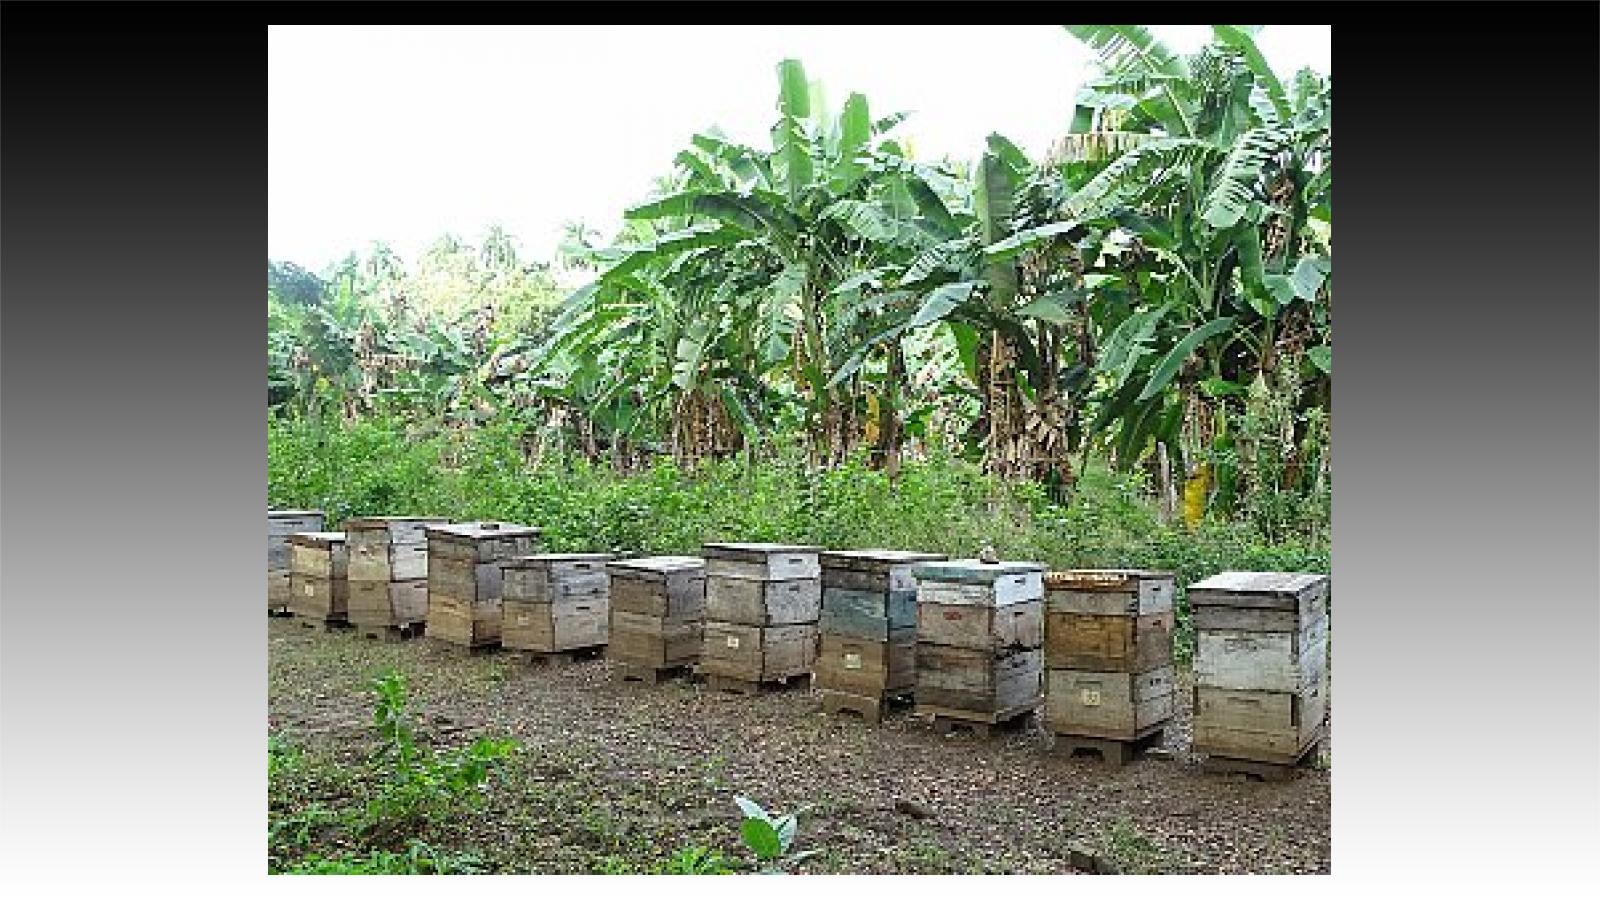 Des apiculteurs constatent une perte de production de miel à cause